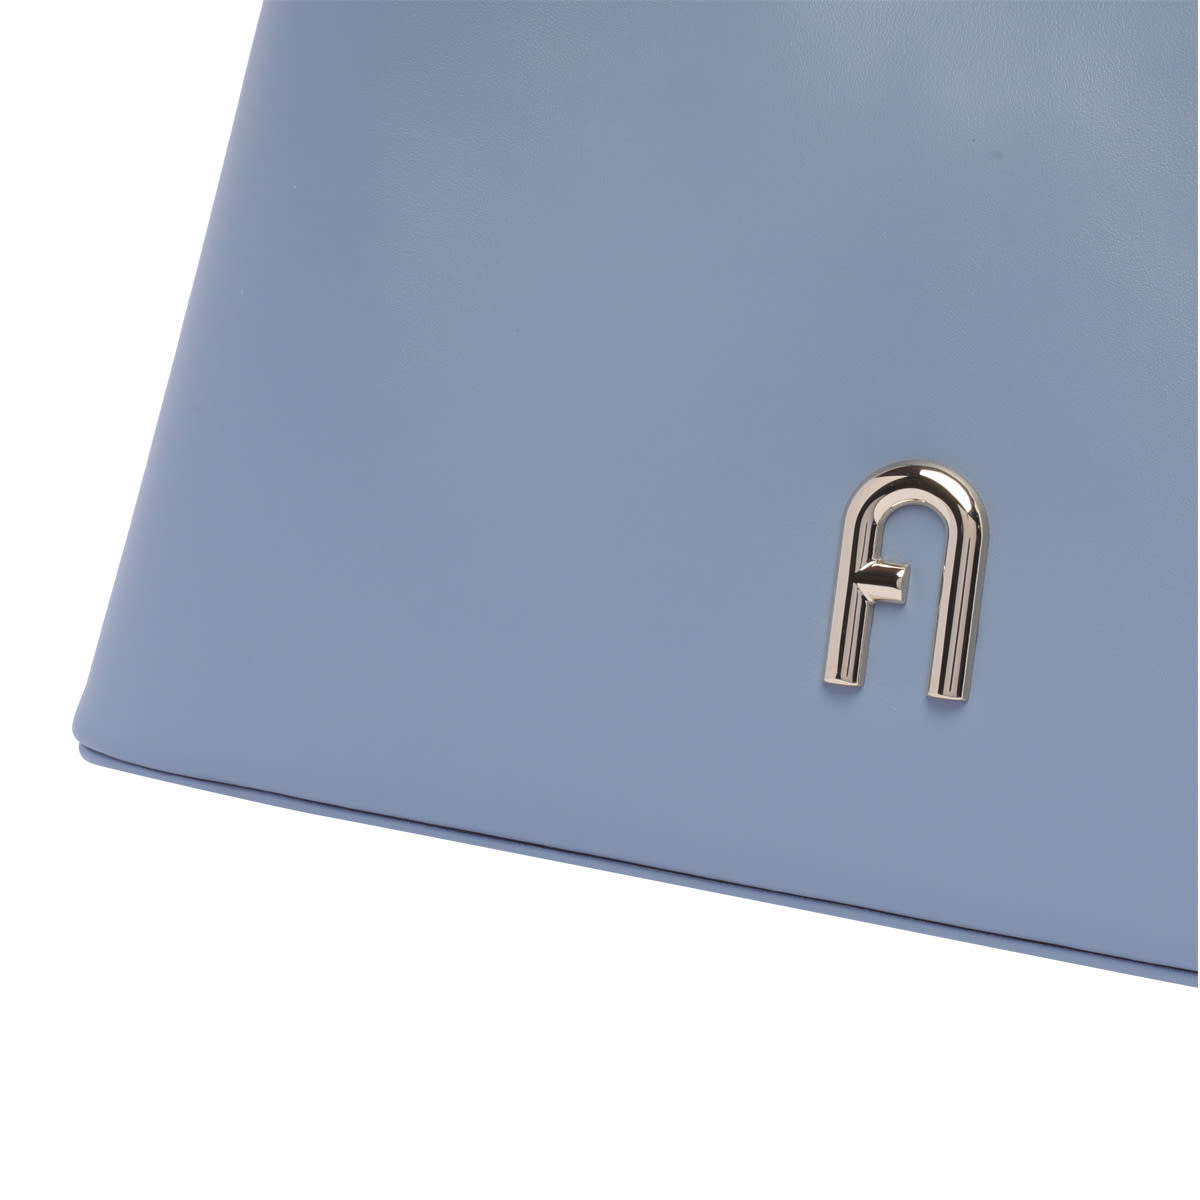 Shop Furla Small Diamante Bag In Azzurro